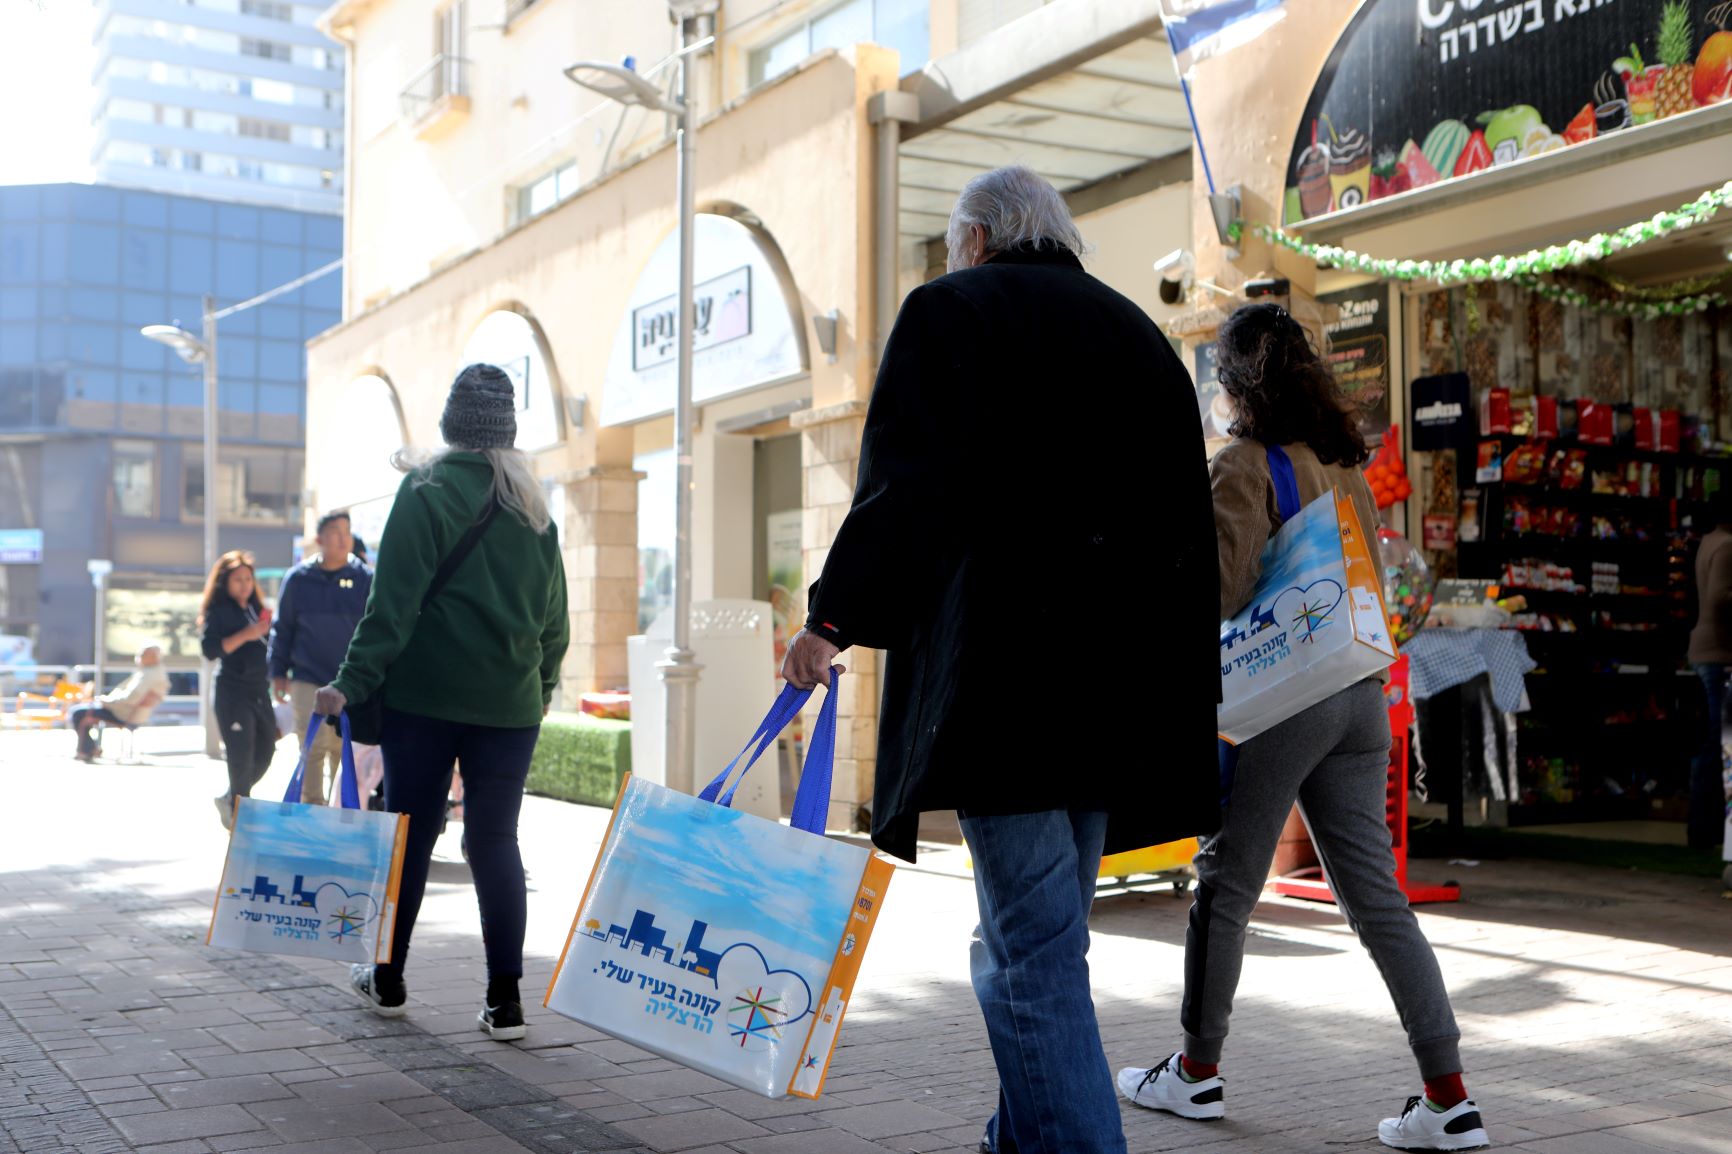 עיריית הרצליה, המרכז לפיתוח עירוני, מציגה: תכנית לעידוד הקניות במרכז העיר